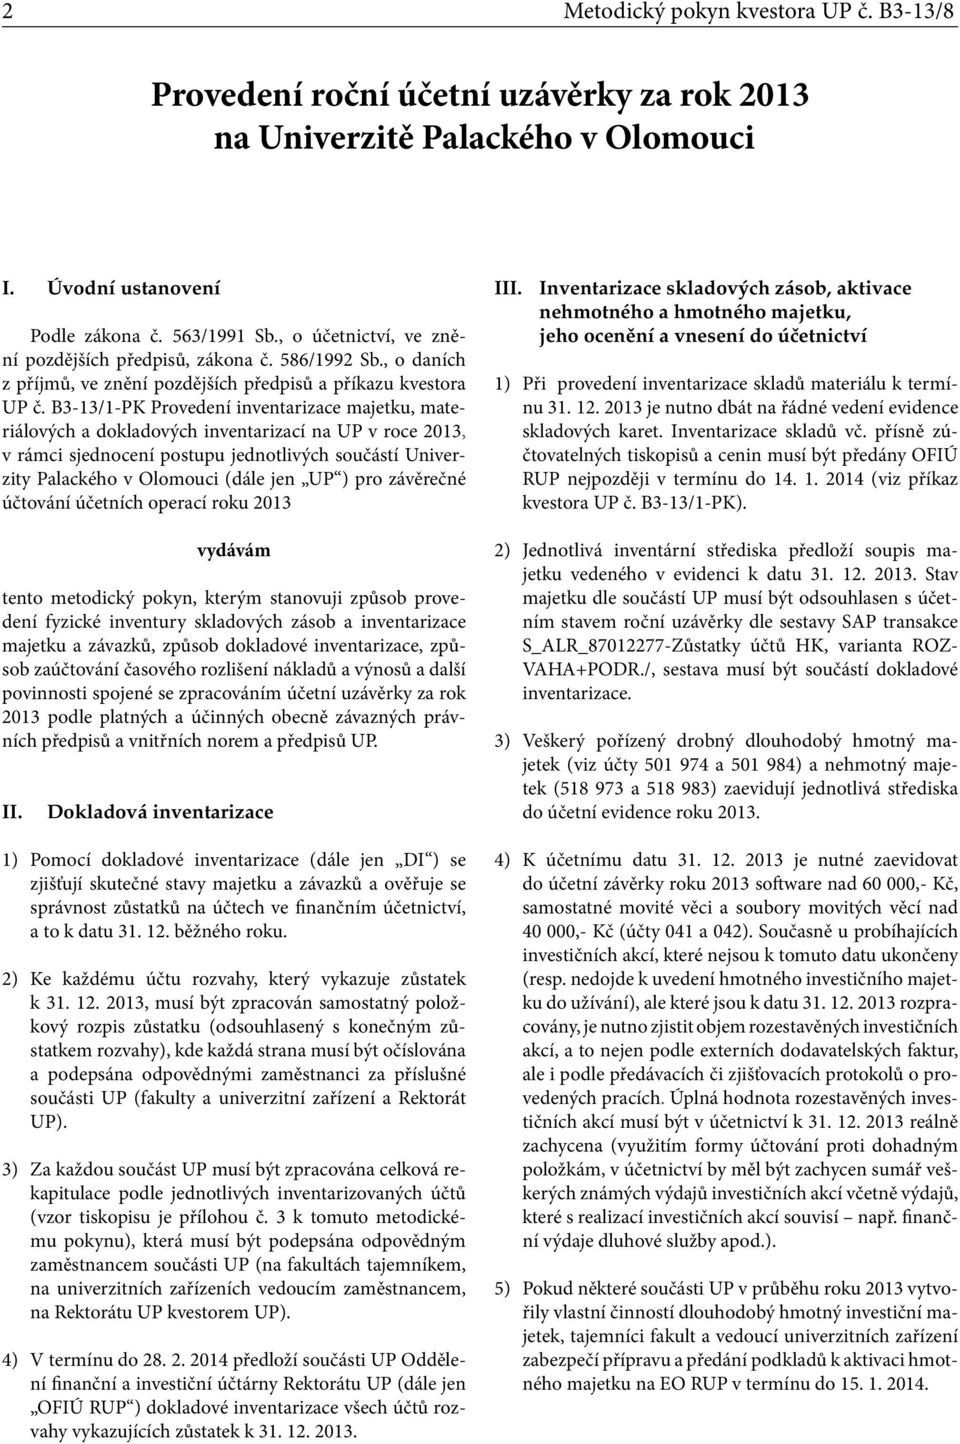 B3-13/1-PK Provedení inventarizace majetku, materiálových a dokladových inventarizací na UP v roce 213, v rámci sjednocení postupu jednotlivých součástí Univerzity Palackého v Olomouci (dále jen UP )